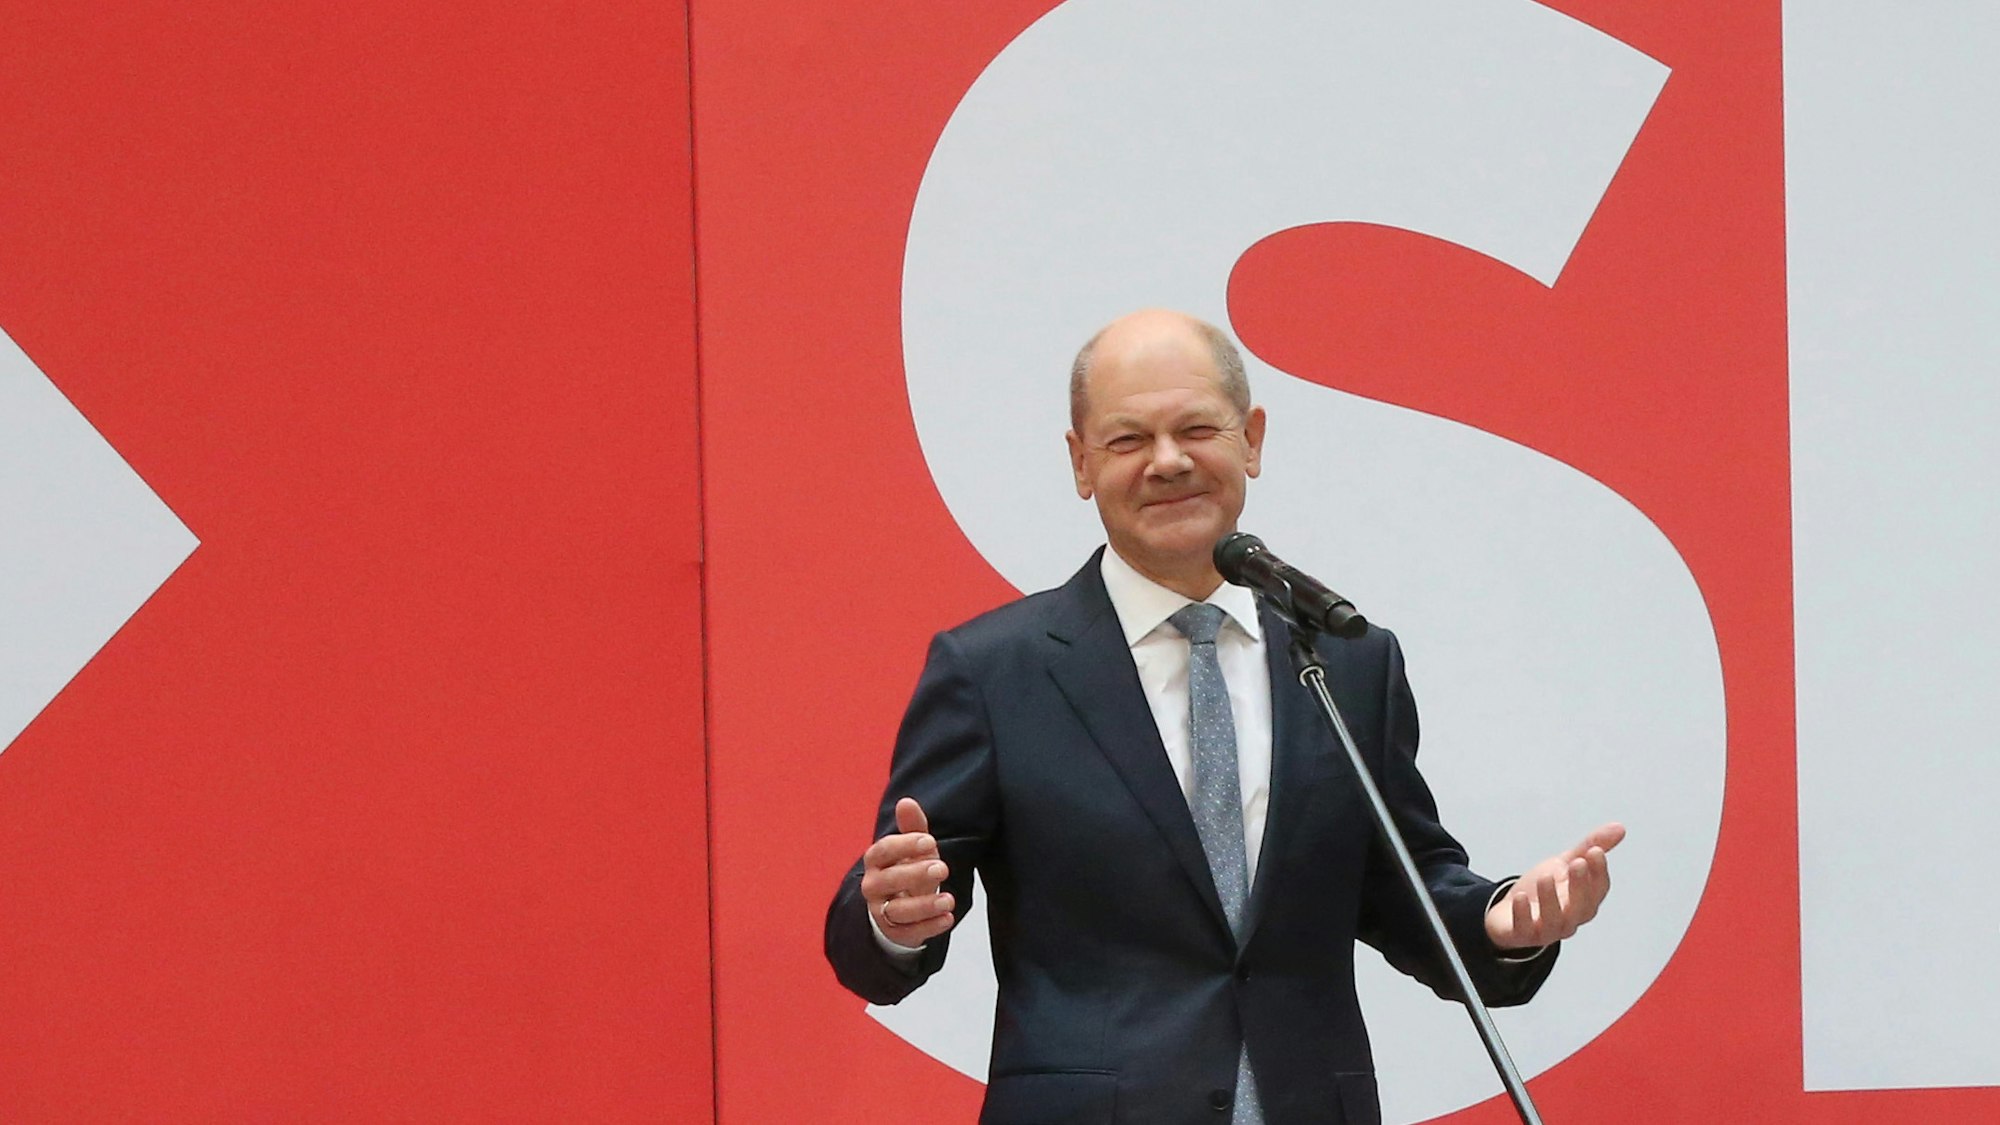 Am Tag nach der Bundestagswahl steht SPD-Kanzlerkandidat Olaf Scholz auf der Bühne im Willy Brandt Haus.